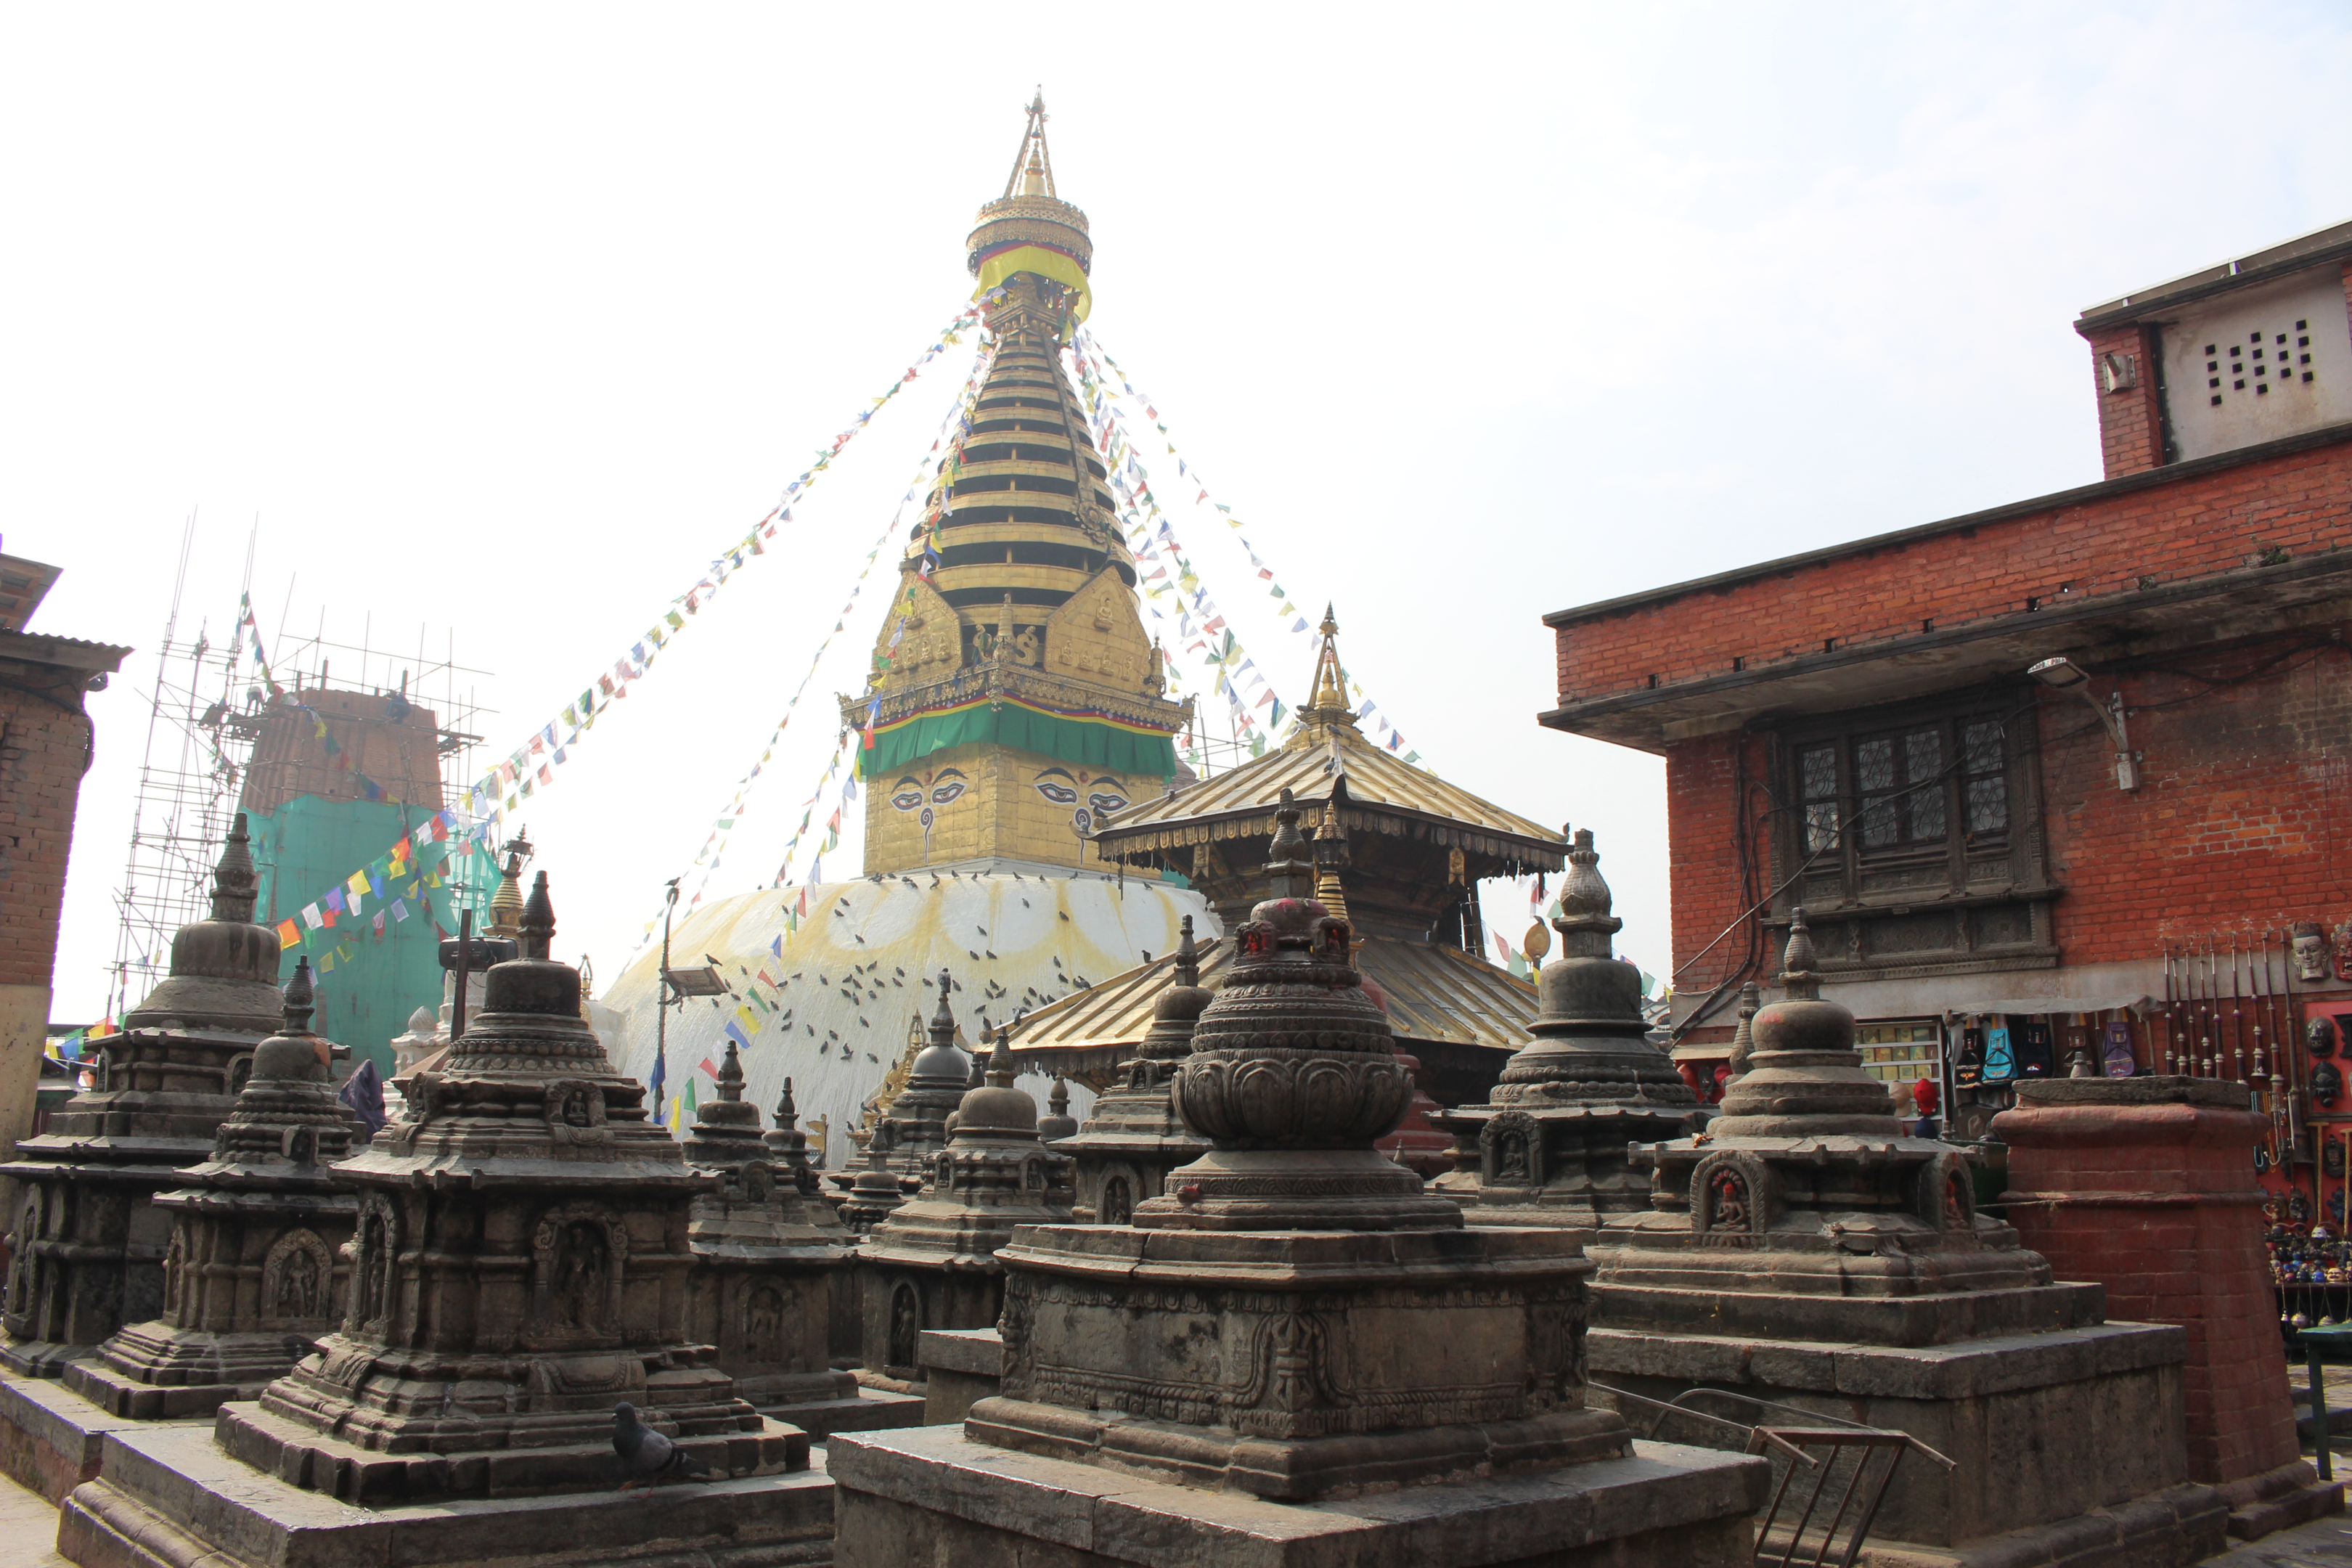 Mini Boudhanath stupa at the monkey temple Swayambhunath